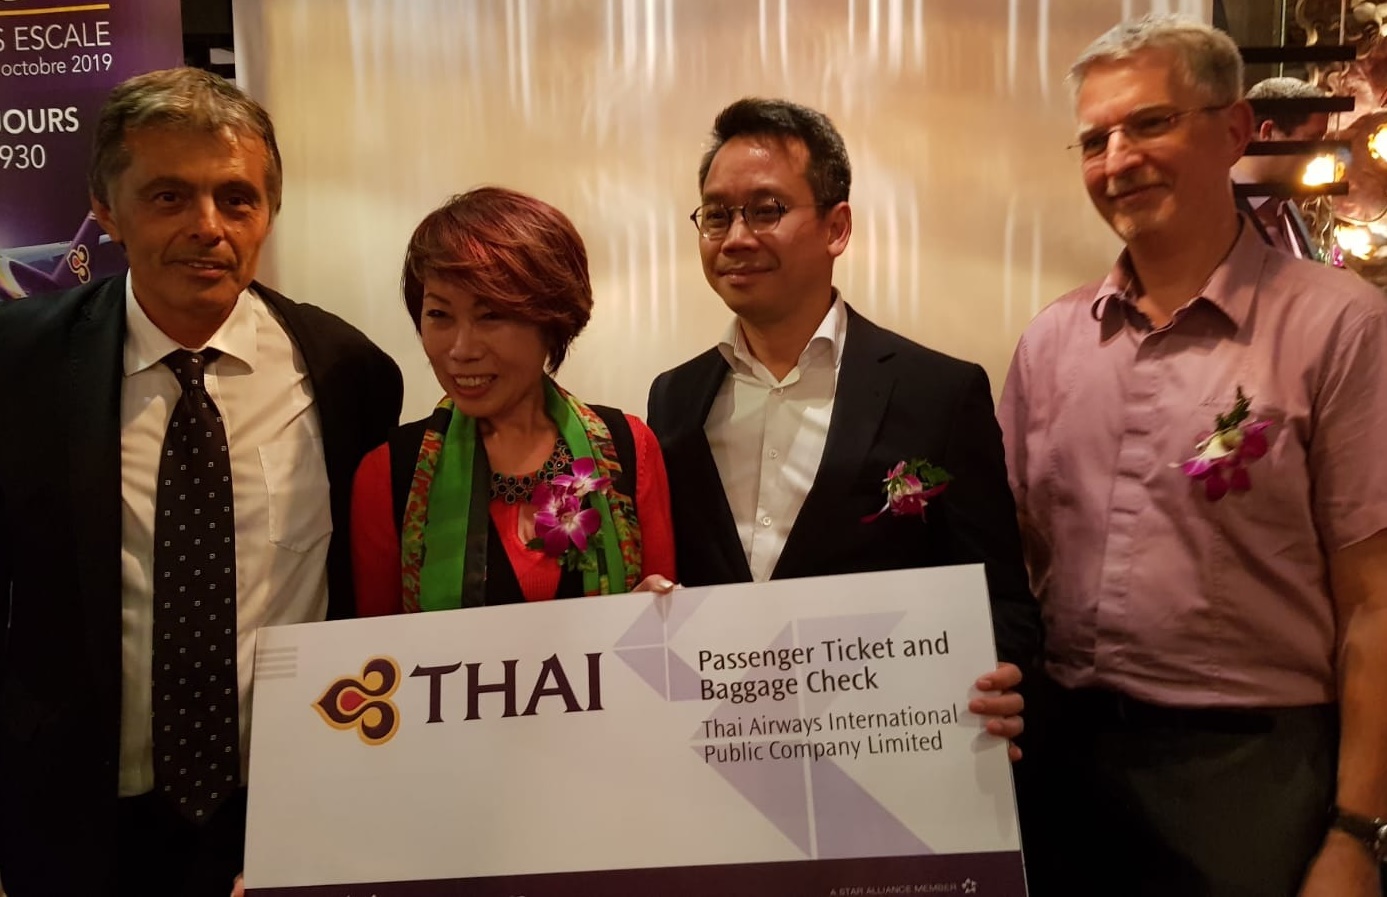 Noi Lunammachak a remporté un billet d'avion avec la Thai lors d'un tirage au sort - Photo CE